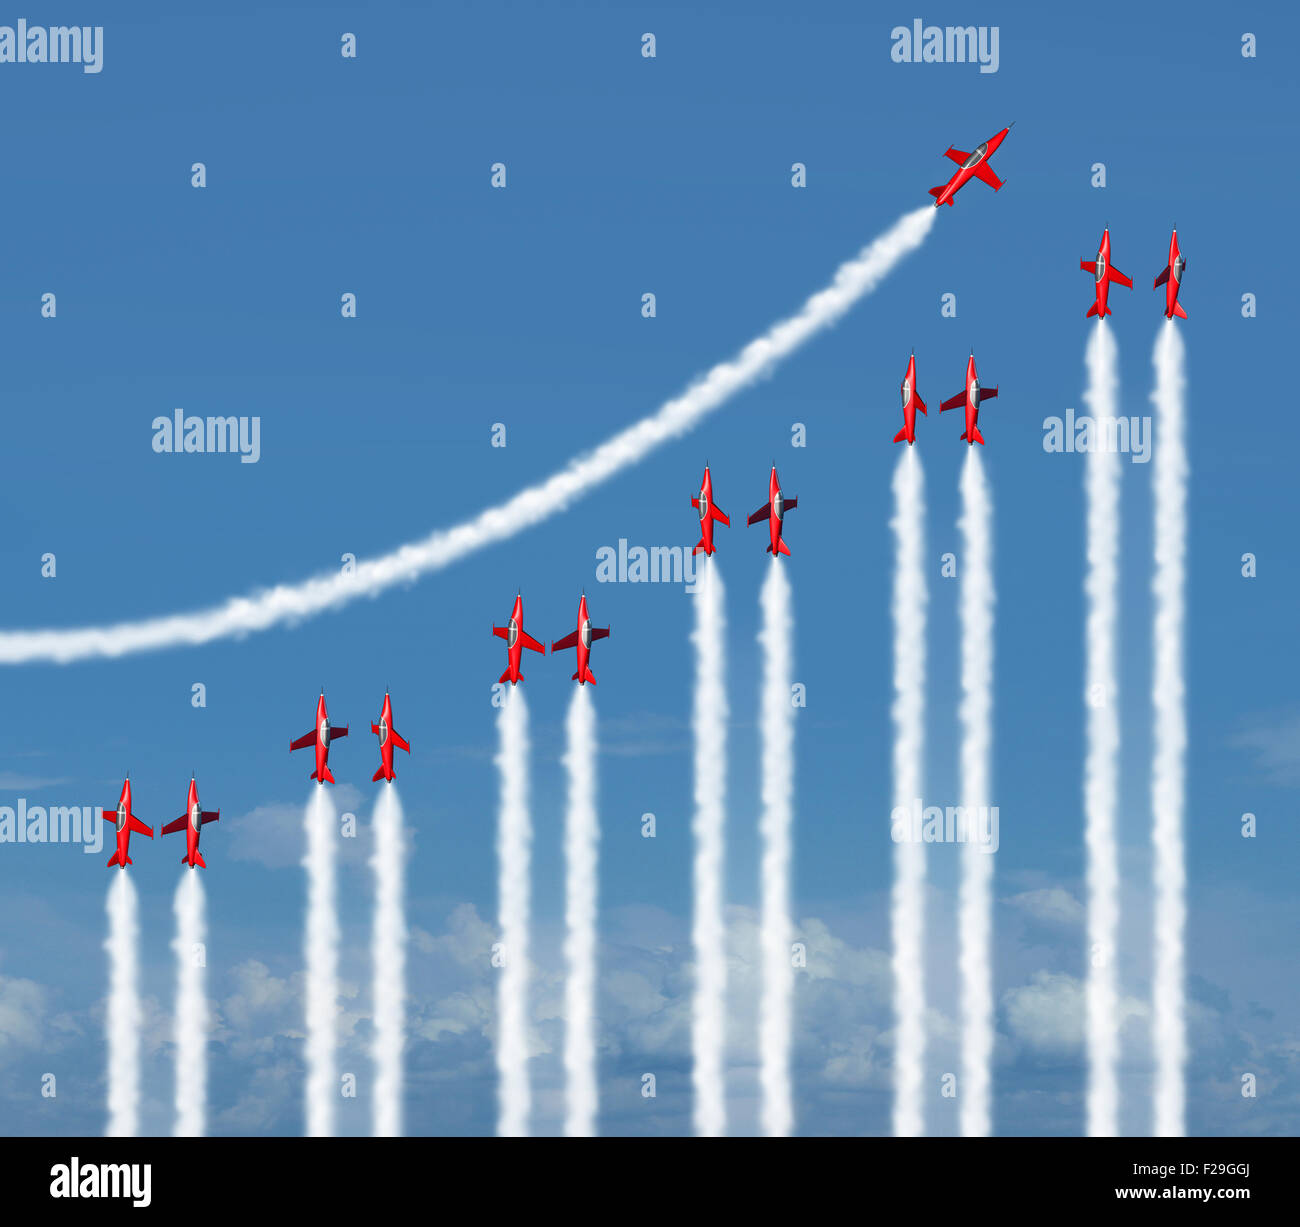 Business graph concept diagramme en tant que groupe de jet acrobatique avec des avions volant en forme de traces de fumée comme une icône infograph pour augmentation de la richesse et de succès. Banque D'Images